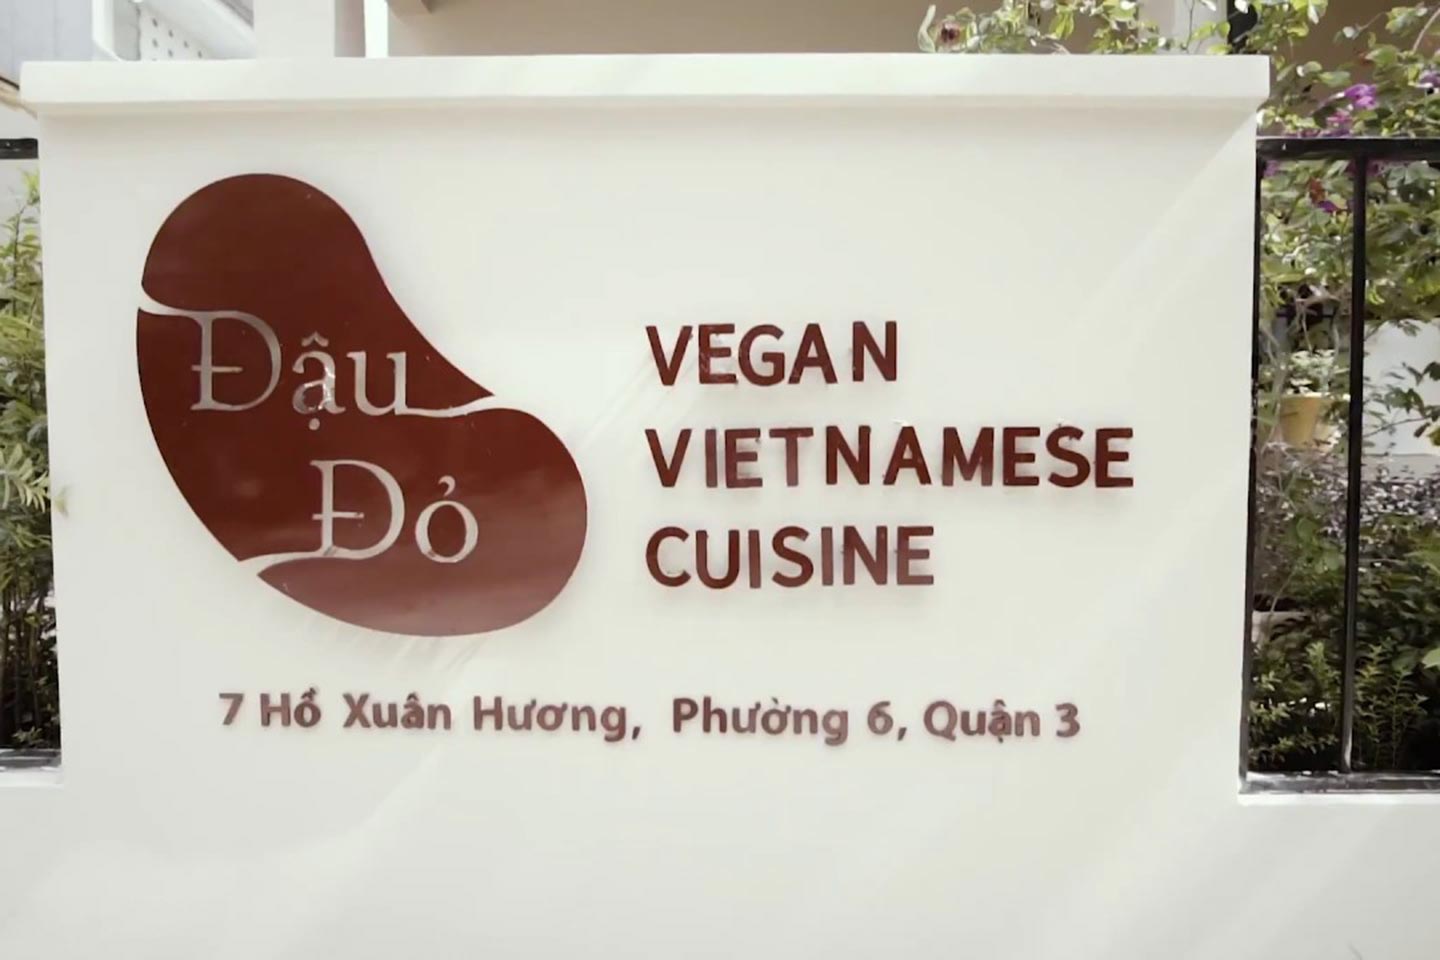 Nhà hàng chay Đâu Đỏ Vegan Vietnam Cuisine